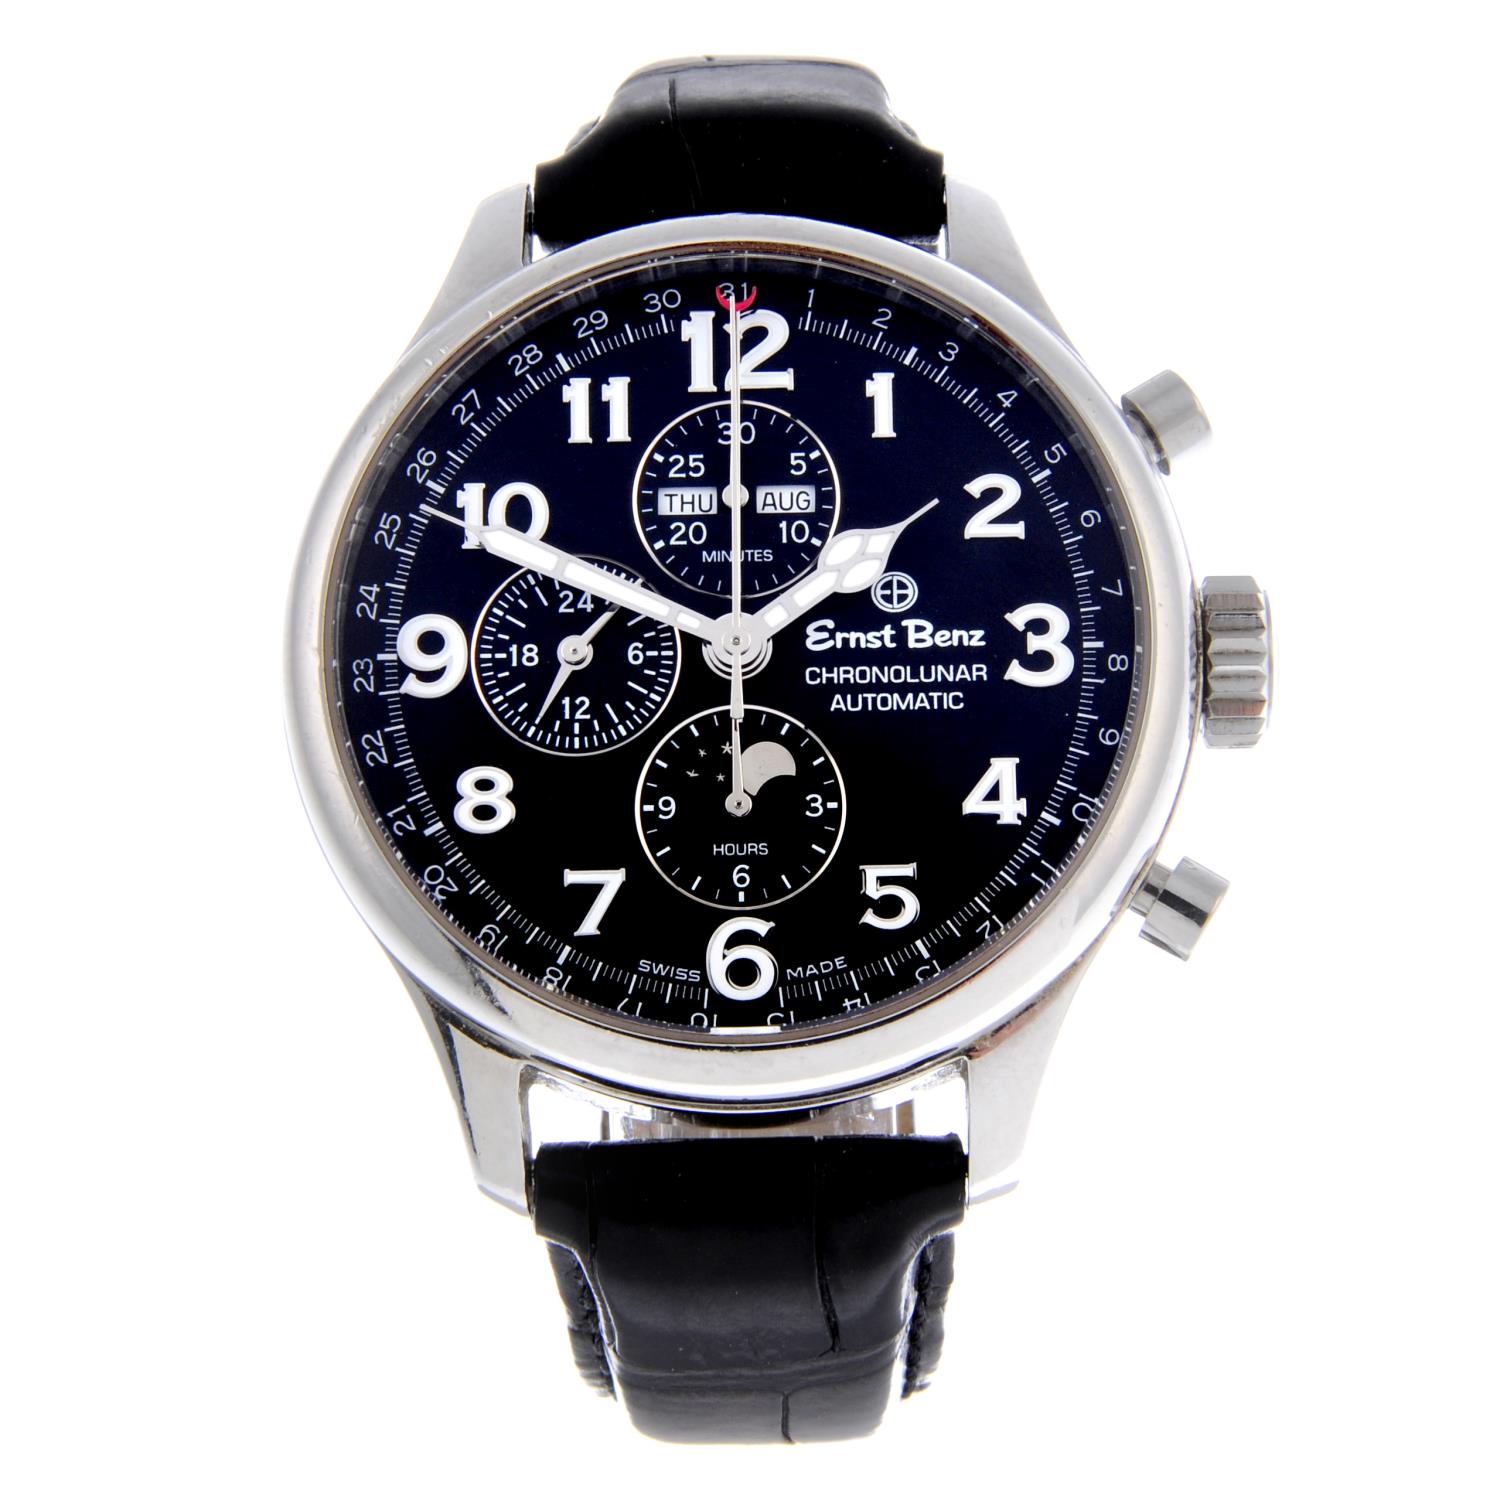 ERNST BENZ - a gentleman's Chronolunar chronograph wrist watch.